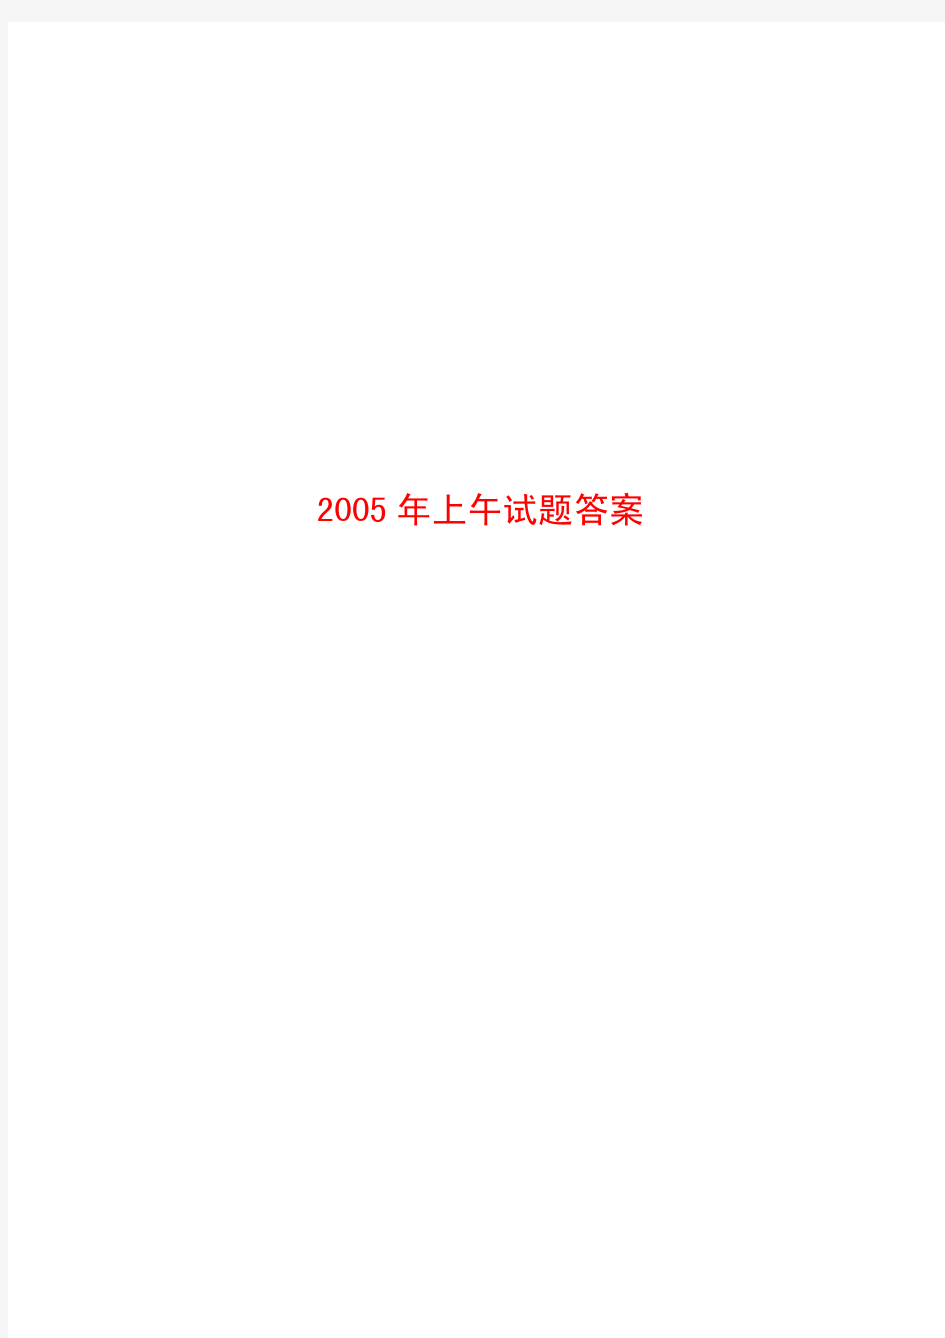 2005年注册公用设备工程师公共基础真题.pdf